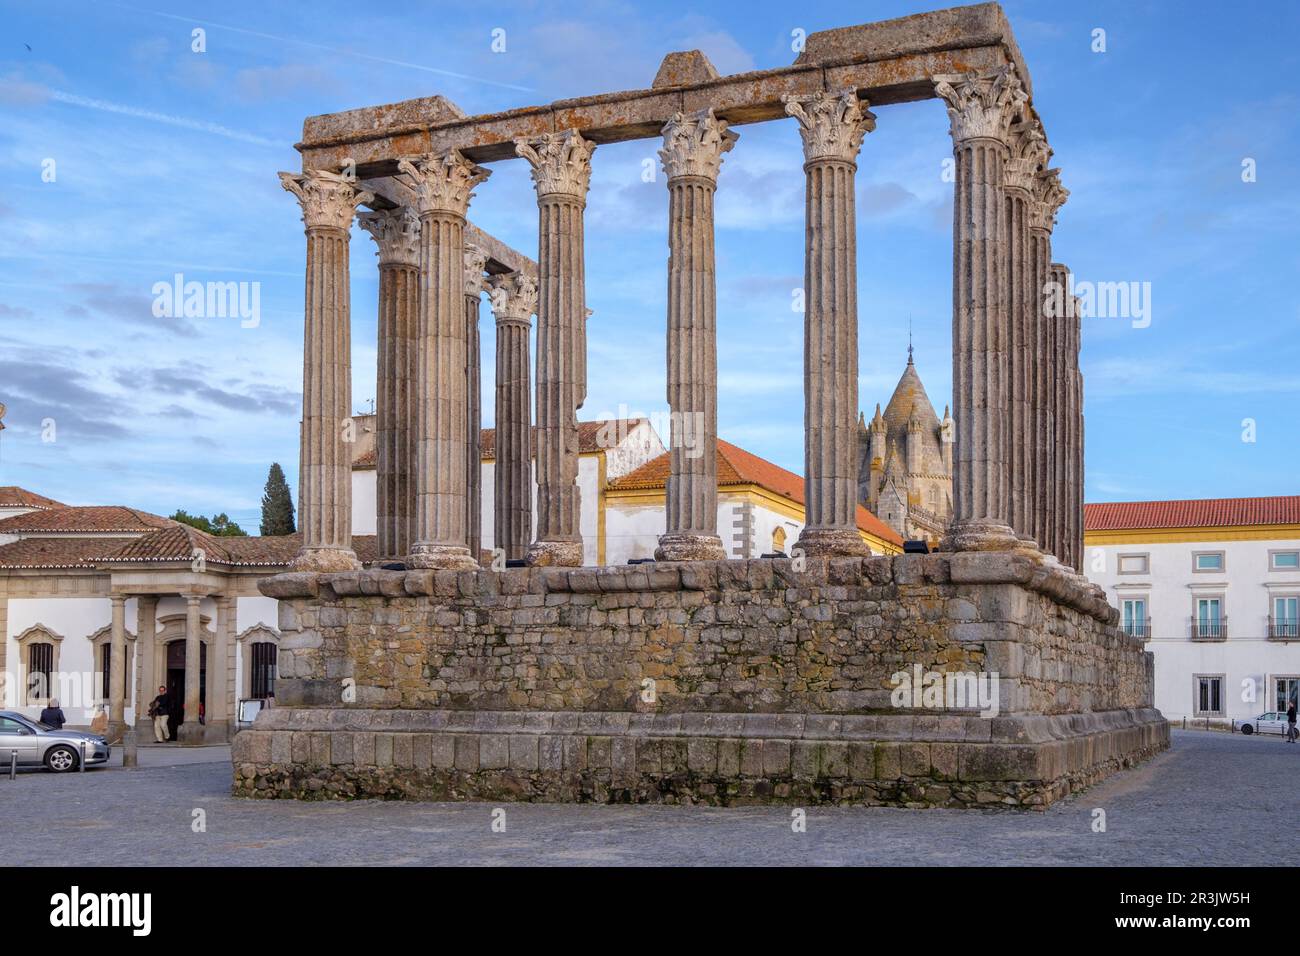 Templo romano de Évora, Templo de Diana, siglo I a.c., Évora, Alentejo, Portugal. Stock Photo